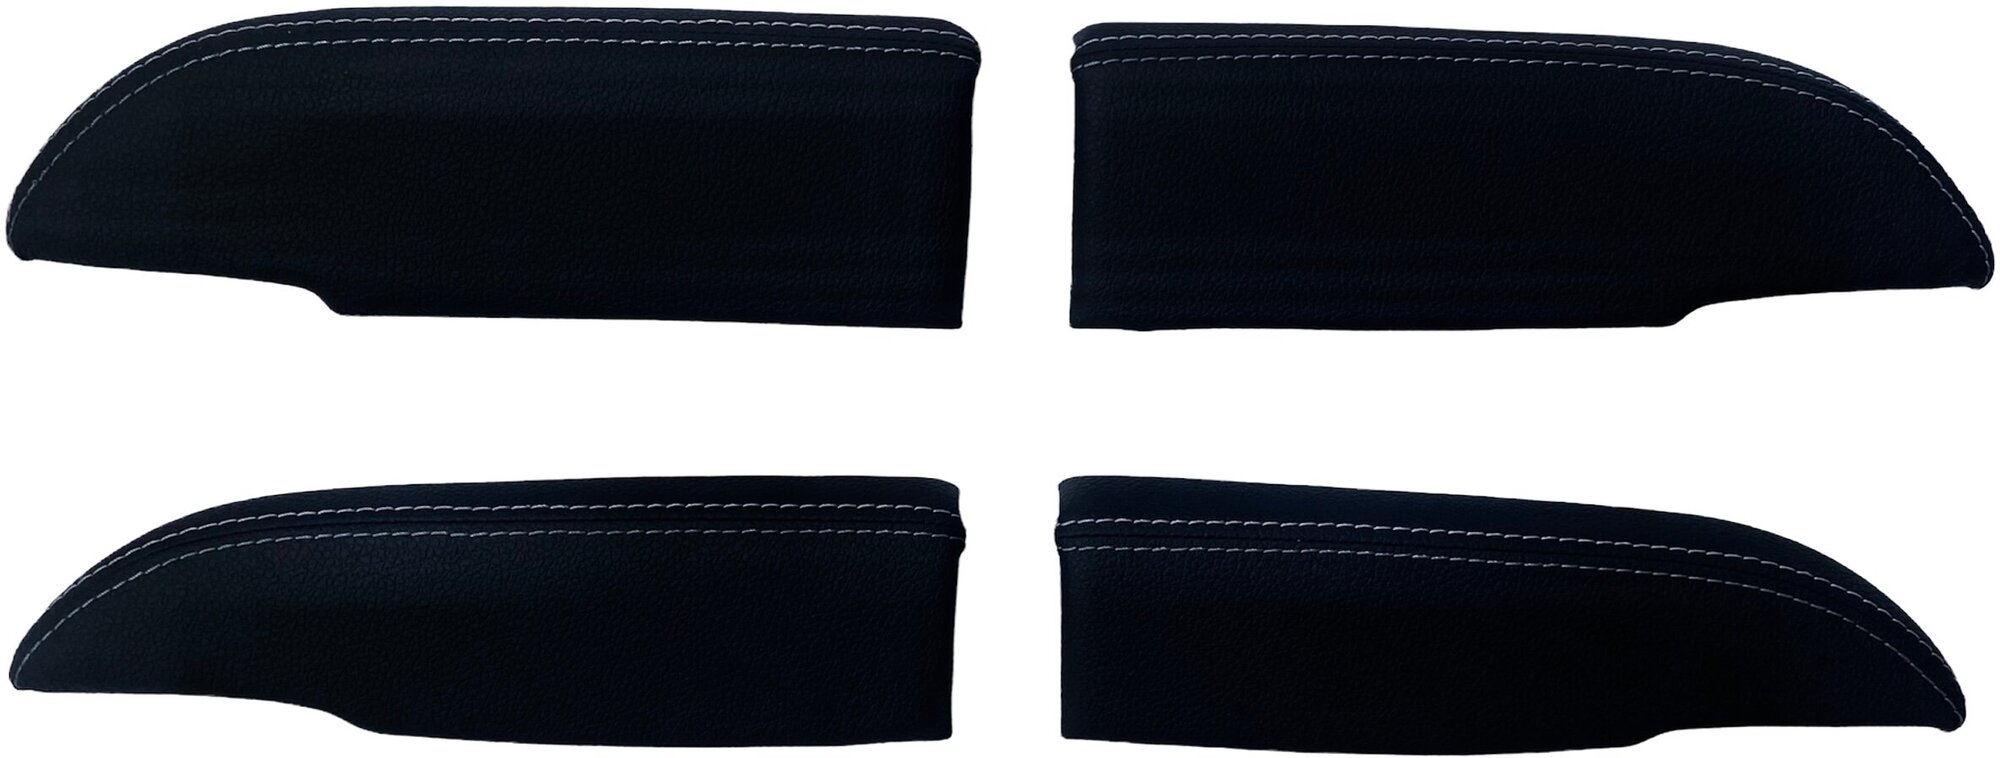 Накладки на подлокотники двери Premium для Лада Приора (серая строчка) 4 штуки